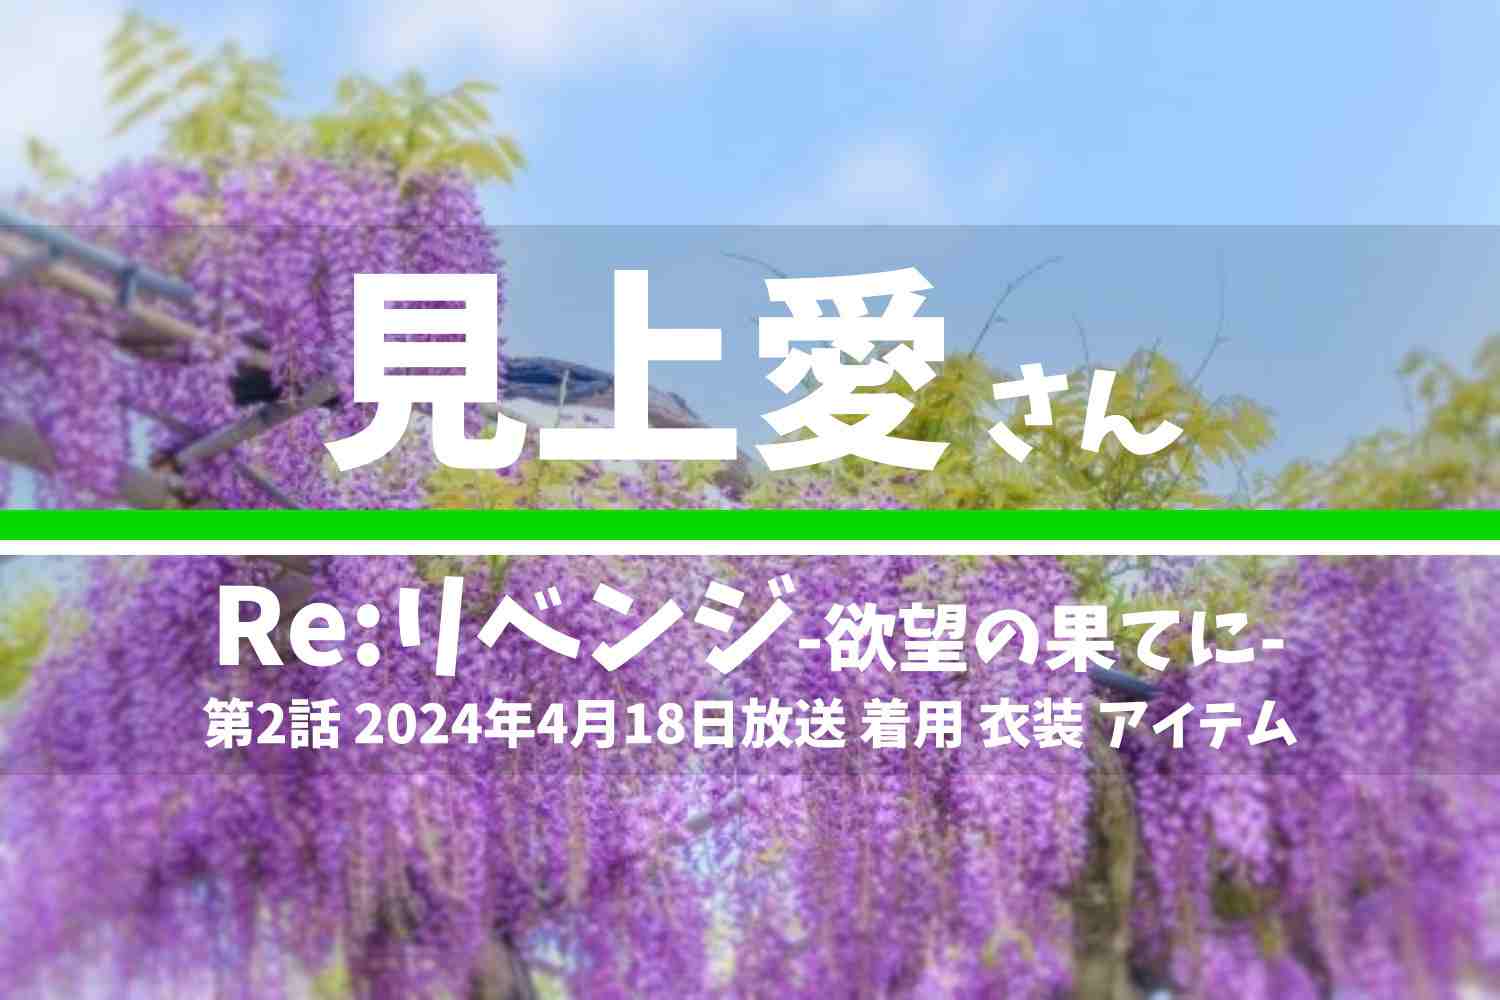 Re:リベンジ-欲望の果てに- 見上愛さん テレビドラマ 衣装 2024年4月18日放送